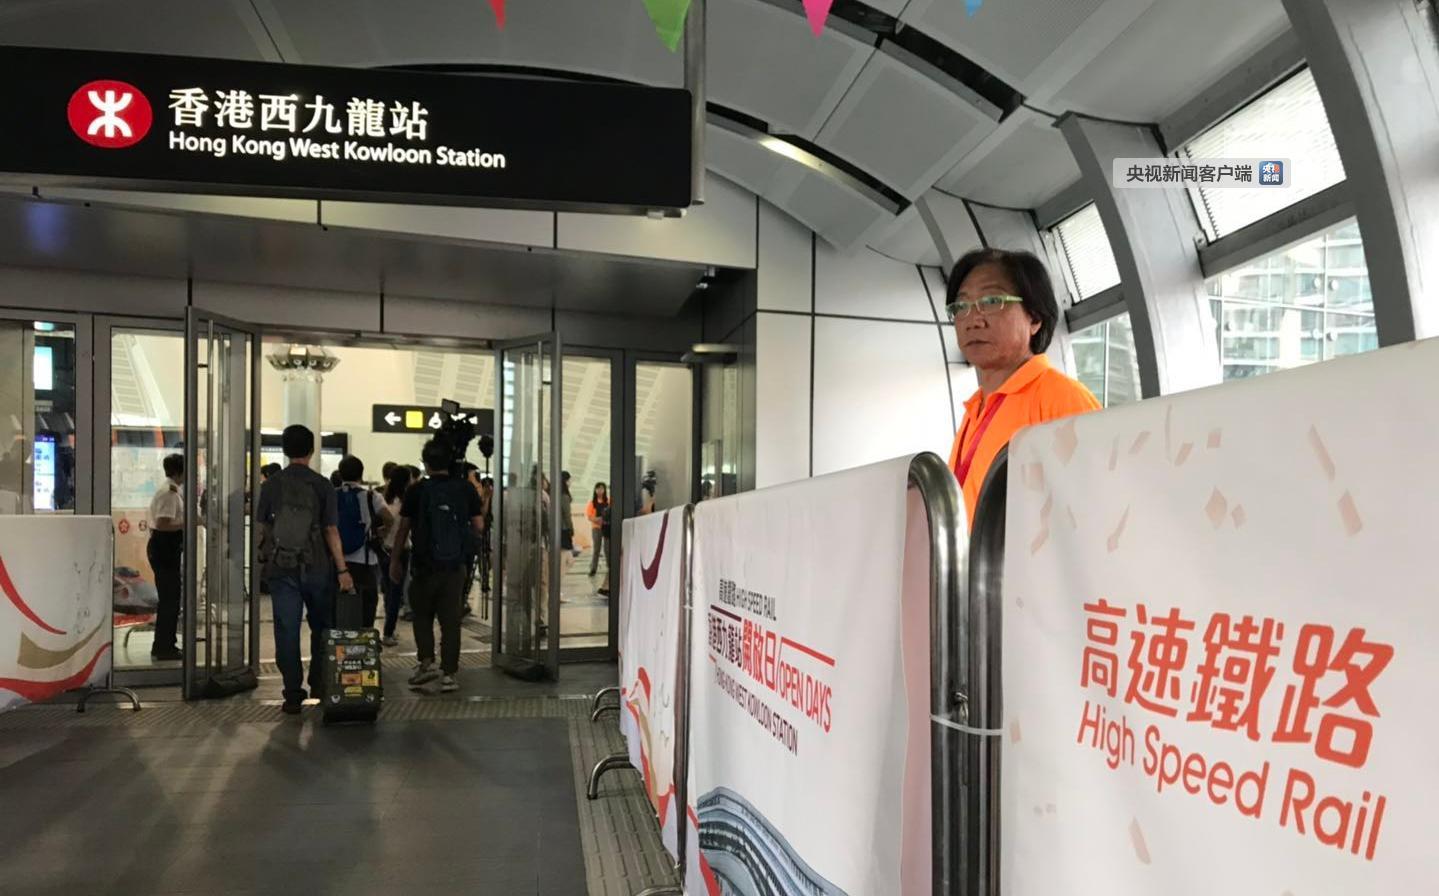 88万人次坐高铁去了香港  通车15天卖出100万张票